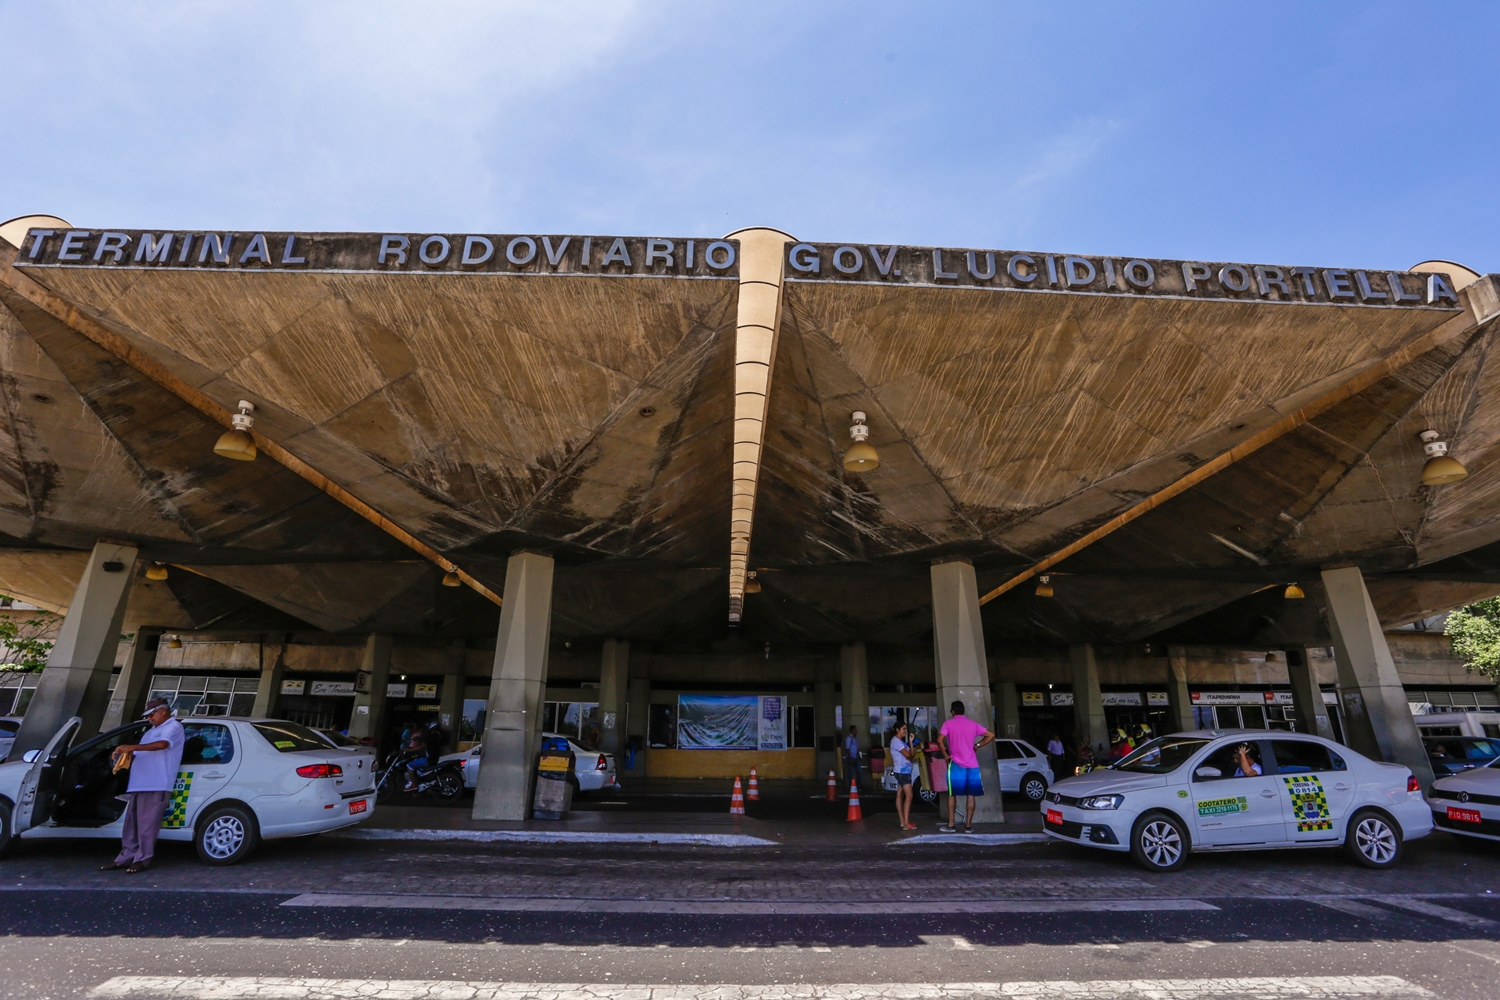 Terminal Rodoviário Gov. Lucídio Portella